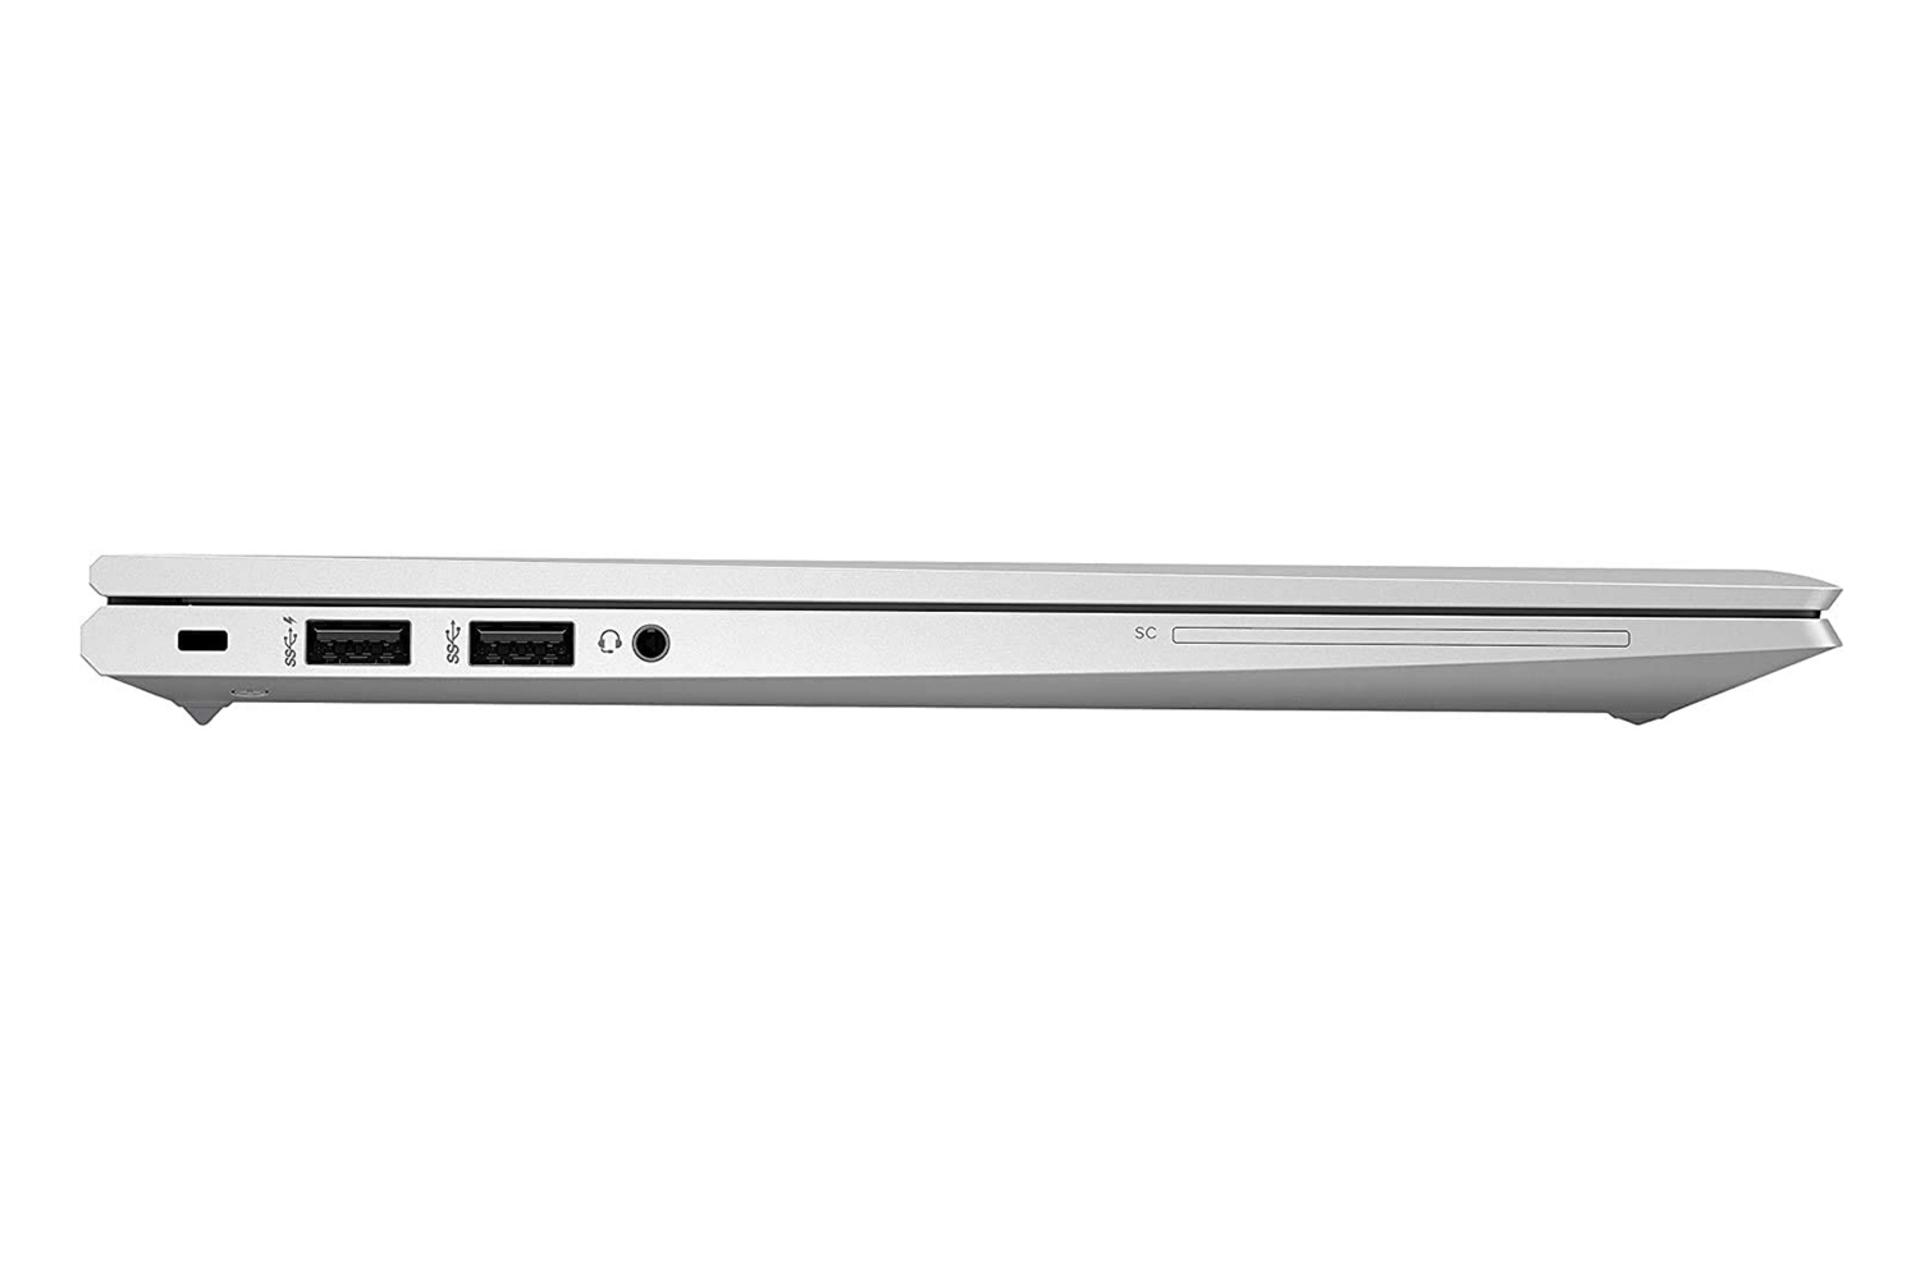 نمای کنار لپ تاپ اچ پی الیت بوک 840 G7 در حالت بسته